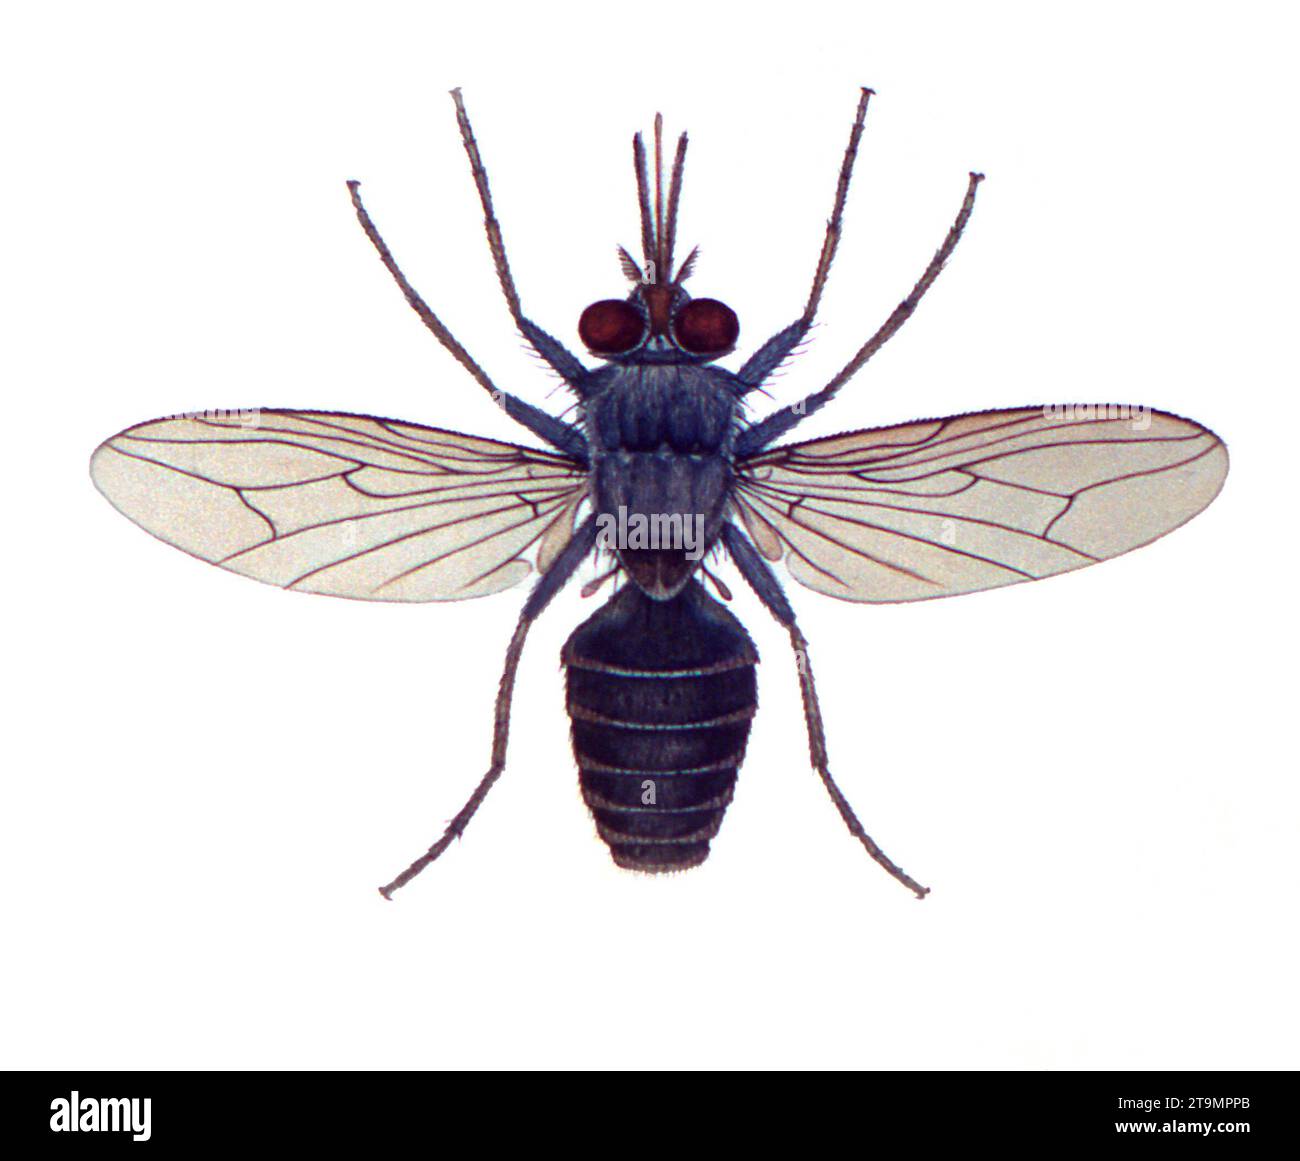 Tsetse Fly. Illustration of a Tsetse fly, Glossina palpalis Stock Photo